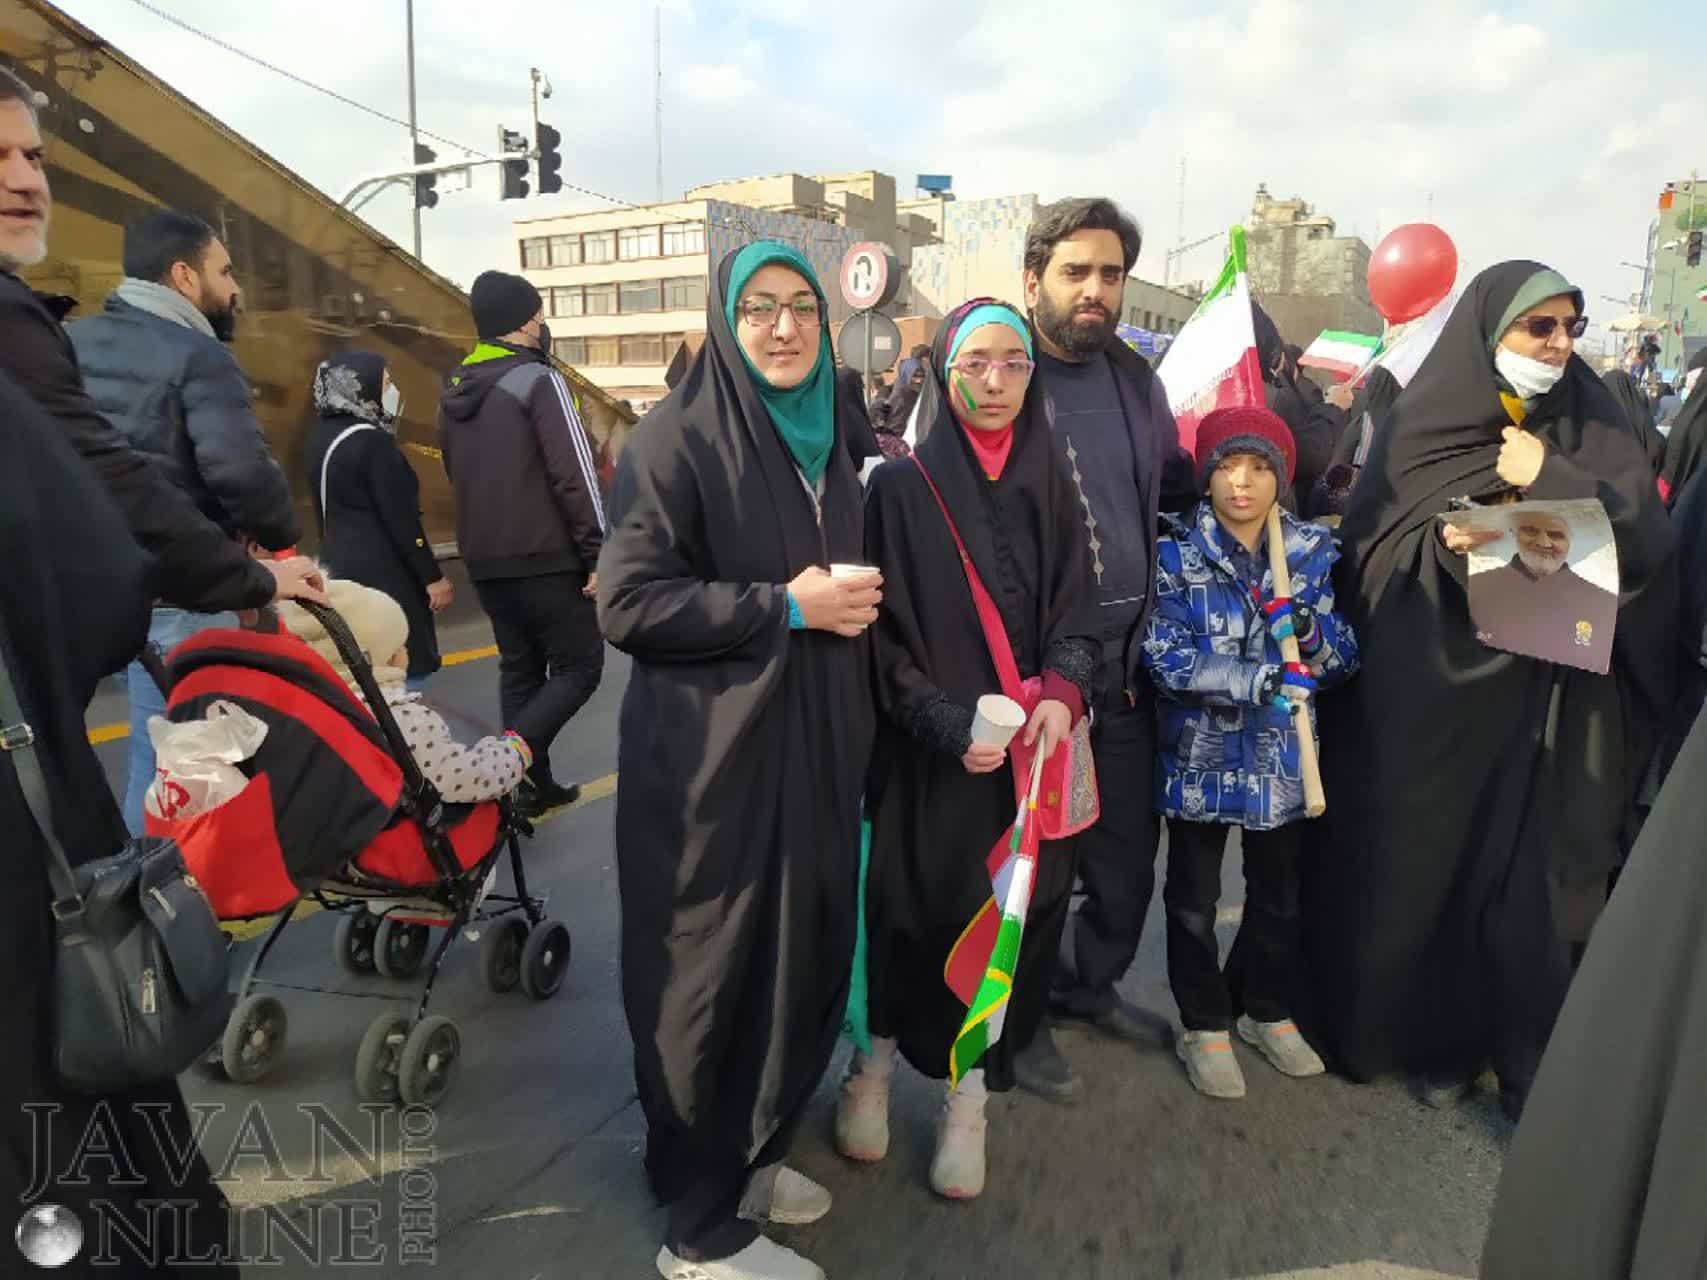 حضور پرشور مردم در راهپیمایی ۲۲ بهمن/ نمایش ارادت ایرانیان به انقلاب اسلامی در جهان